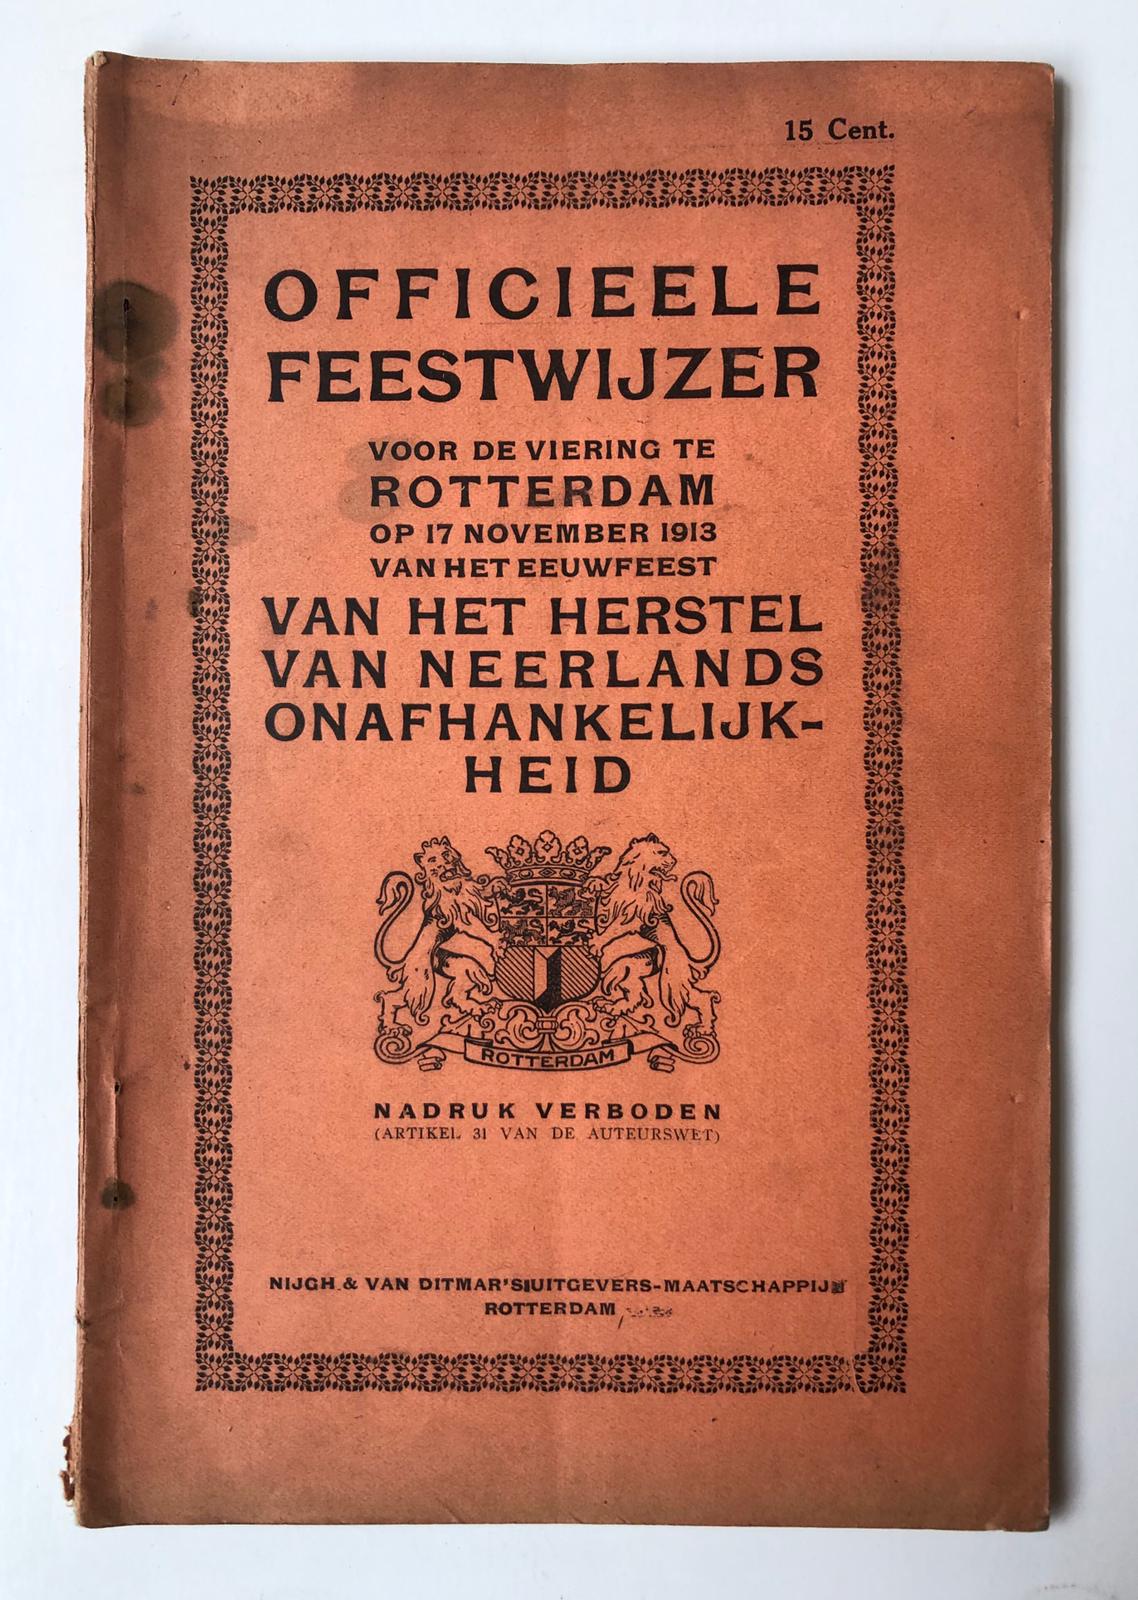 [Rotterdam] Officieele feestwijzer voor de viering te Rotterdam op 17 November 1913 van het eeuwfeest van het herstel van Neerlands onafhankelijkheid, Nijgh & van Ditmar’s uitgevers-maatschappij, Rotterdam, 74 pp.